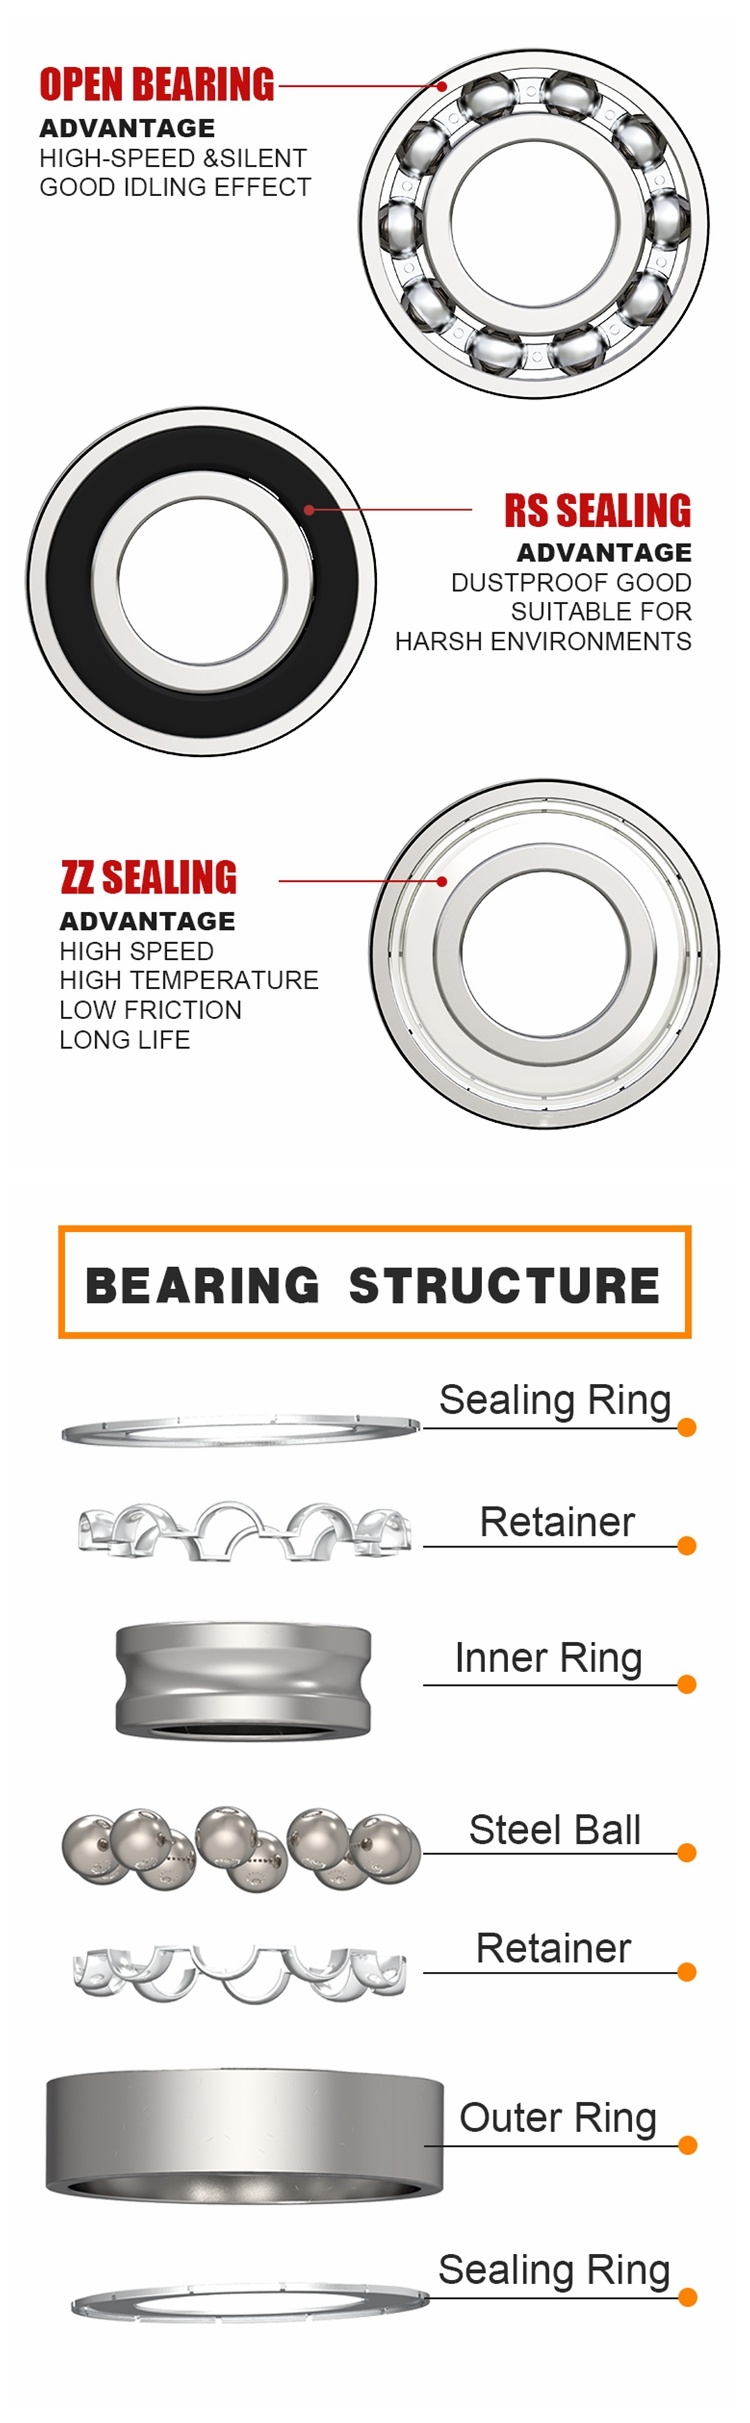 P5 Level Bearings Z1 V1 6800 Zz Ball Bearings